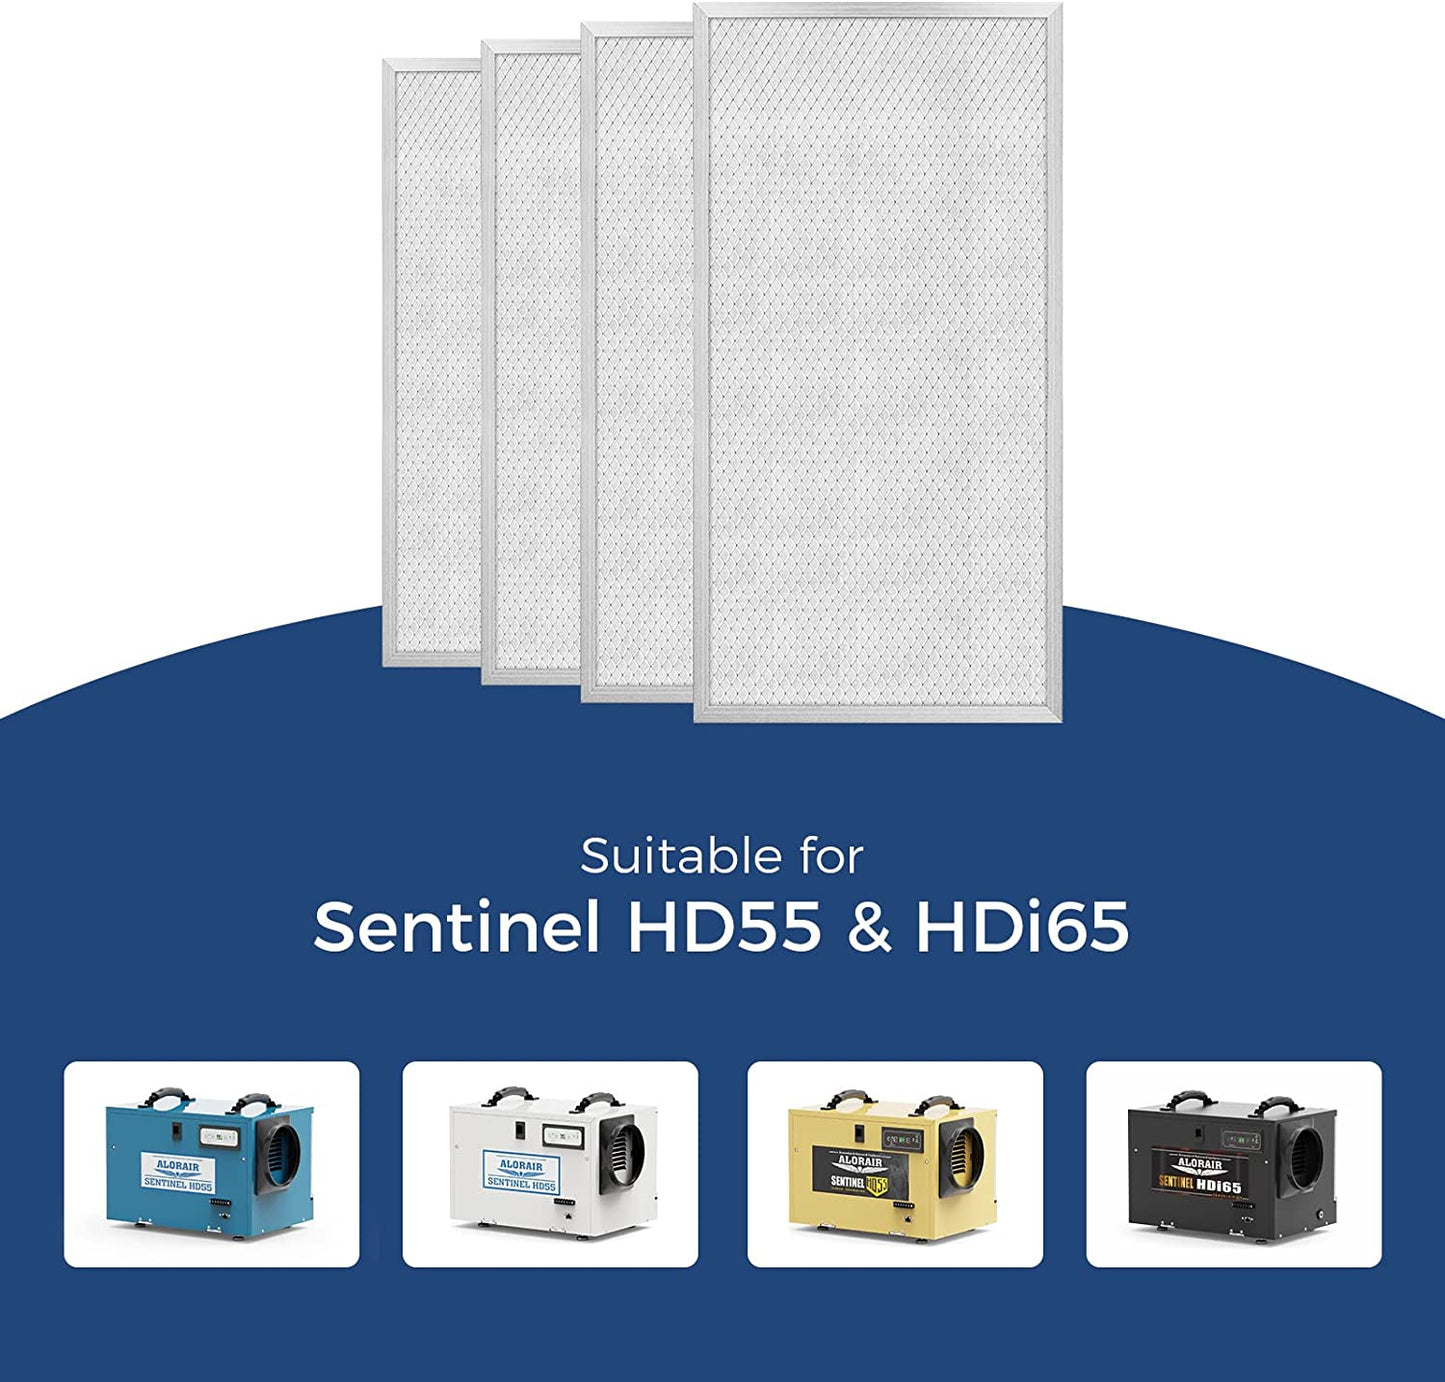 AlorAir® MERV-8 Filter 4 Pack for Sentinel HD55/HDi65 Dehumidifier